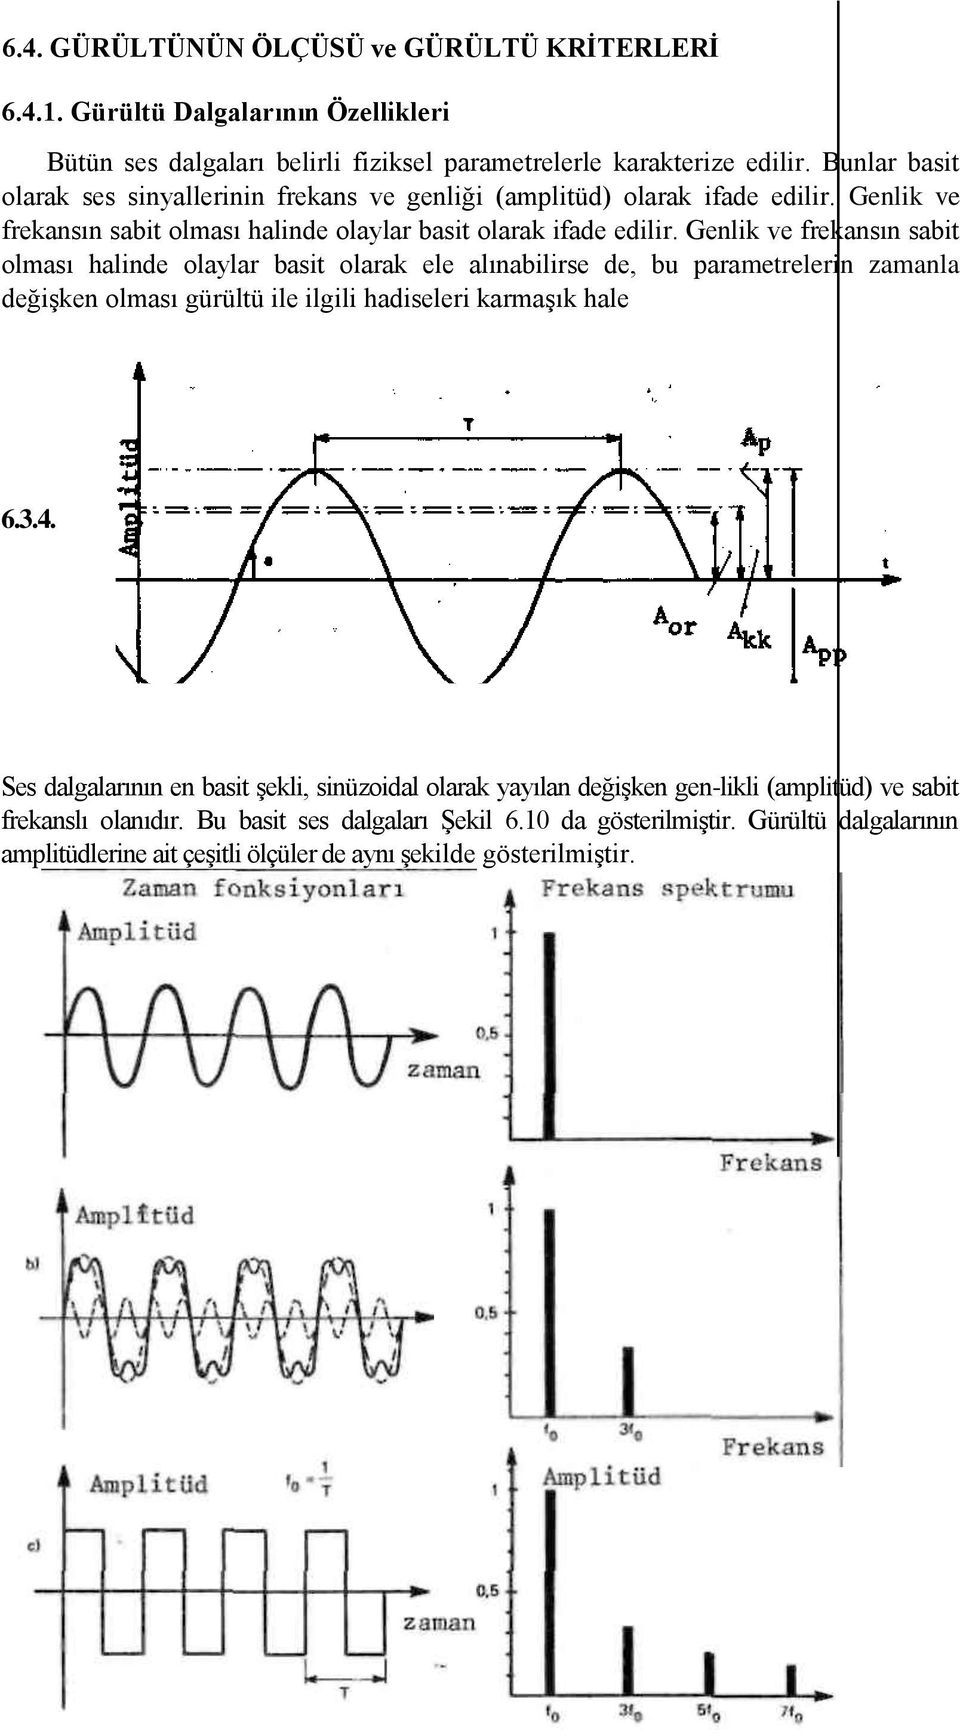 Genlik ve frekansın sabit olması halinde olaylar basit olarak ele alınabilirse de, bu parametrelerin zamanla değişken olması gürültü ile ilgili hadiseleri karmaşık hale 6.3.4.